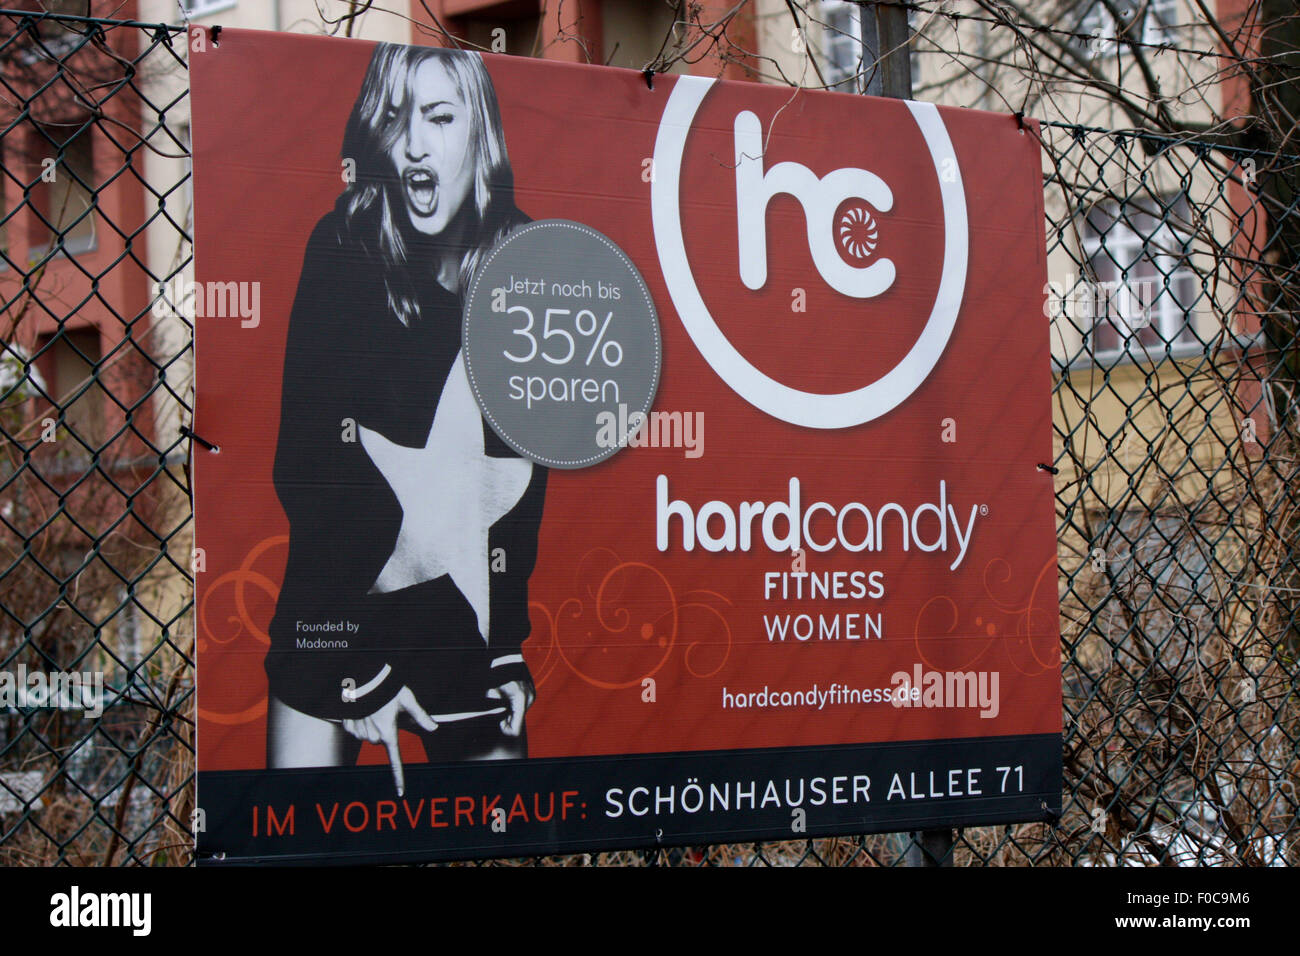 Werbung Fuer sterben von Madonna Betriebene Fitness Studio-Kette "hard Candy", Dezember 2013, Berlin. Stockfoto